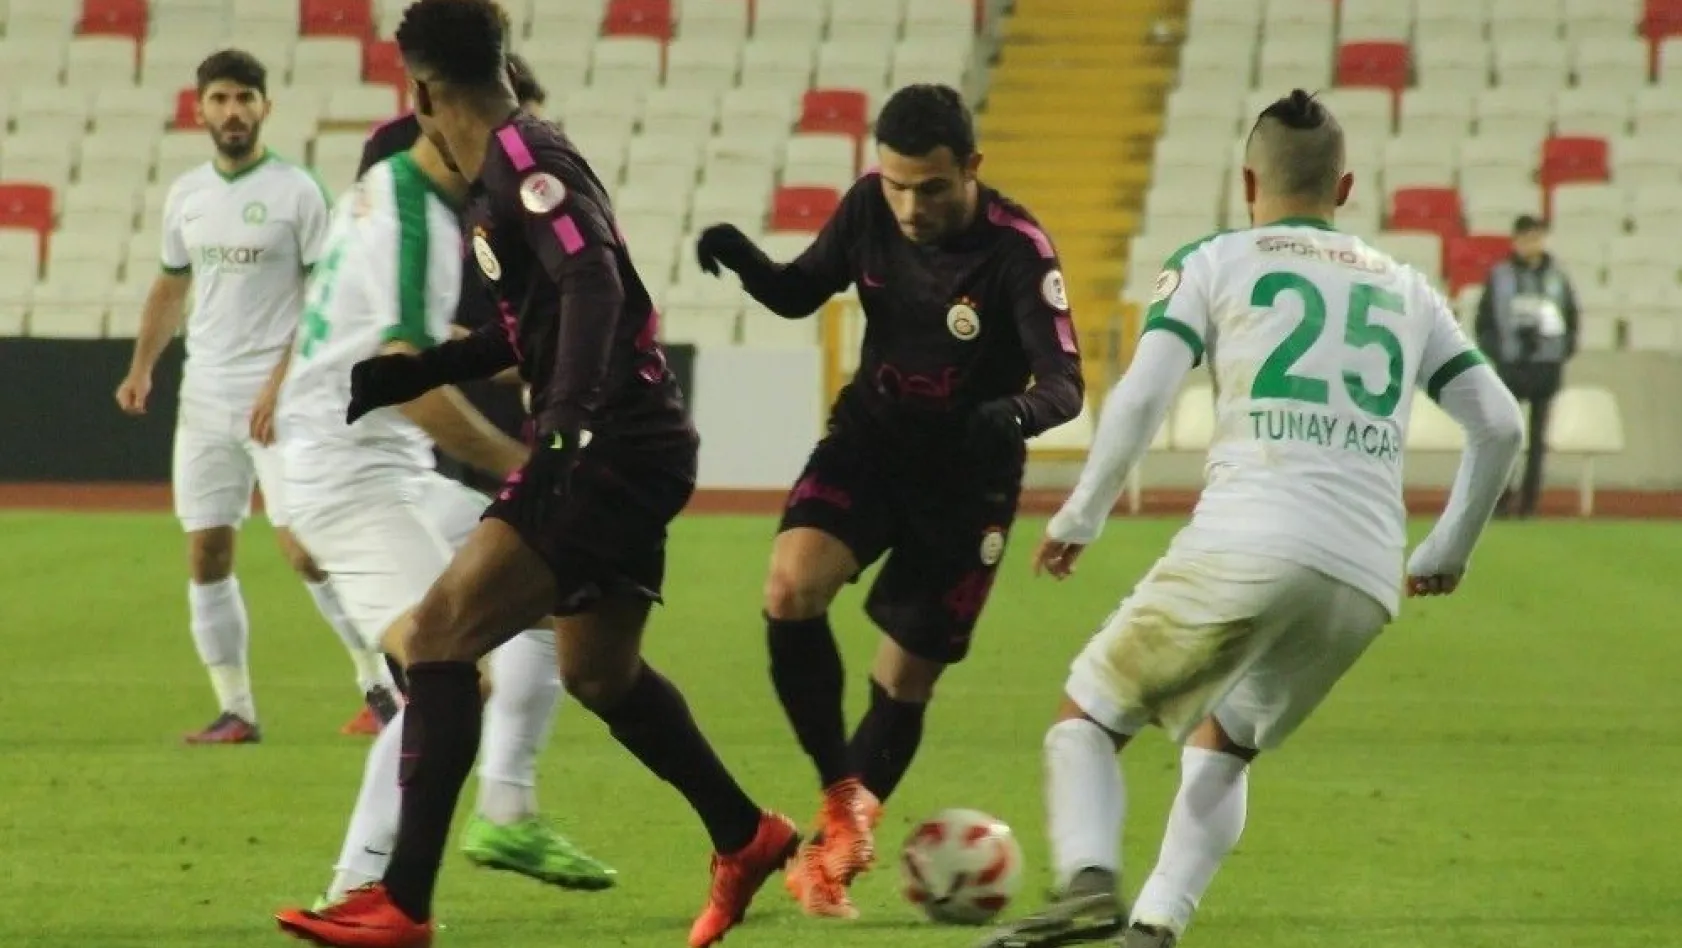 Ziraat Türkiye Kupası: Sivas Belediyespor: 2 - Galatasaray: 1 (Maç sonucu)
